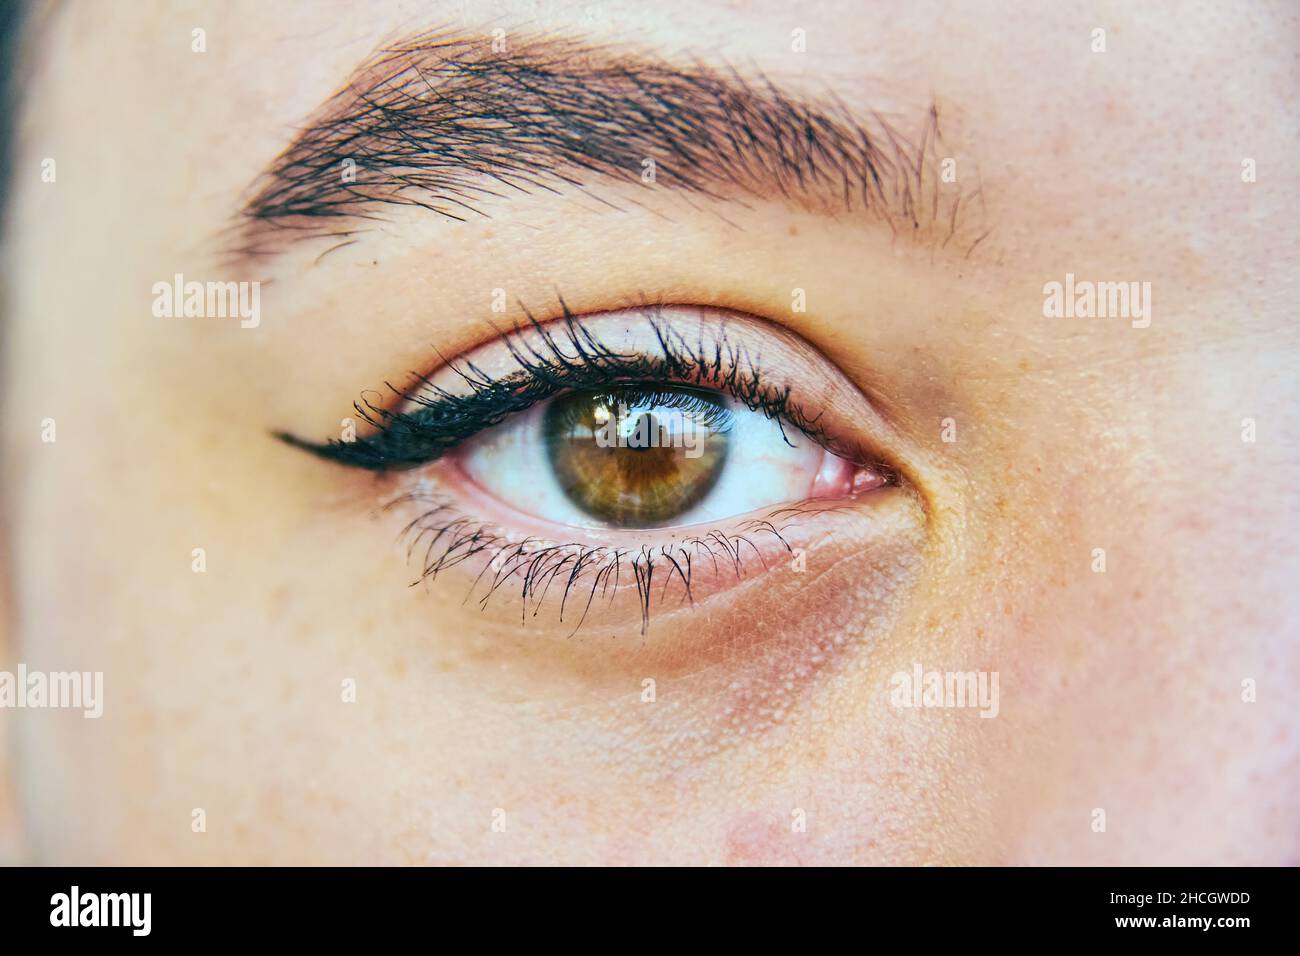 couleur brune de l'œil humain d'une fille Banque D'Images